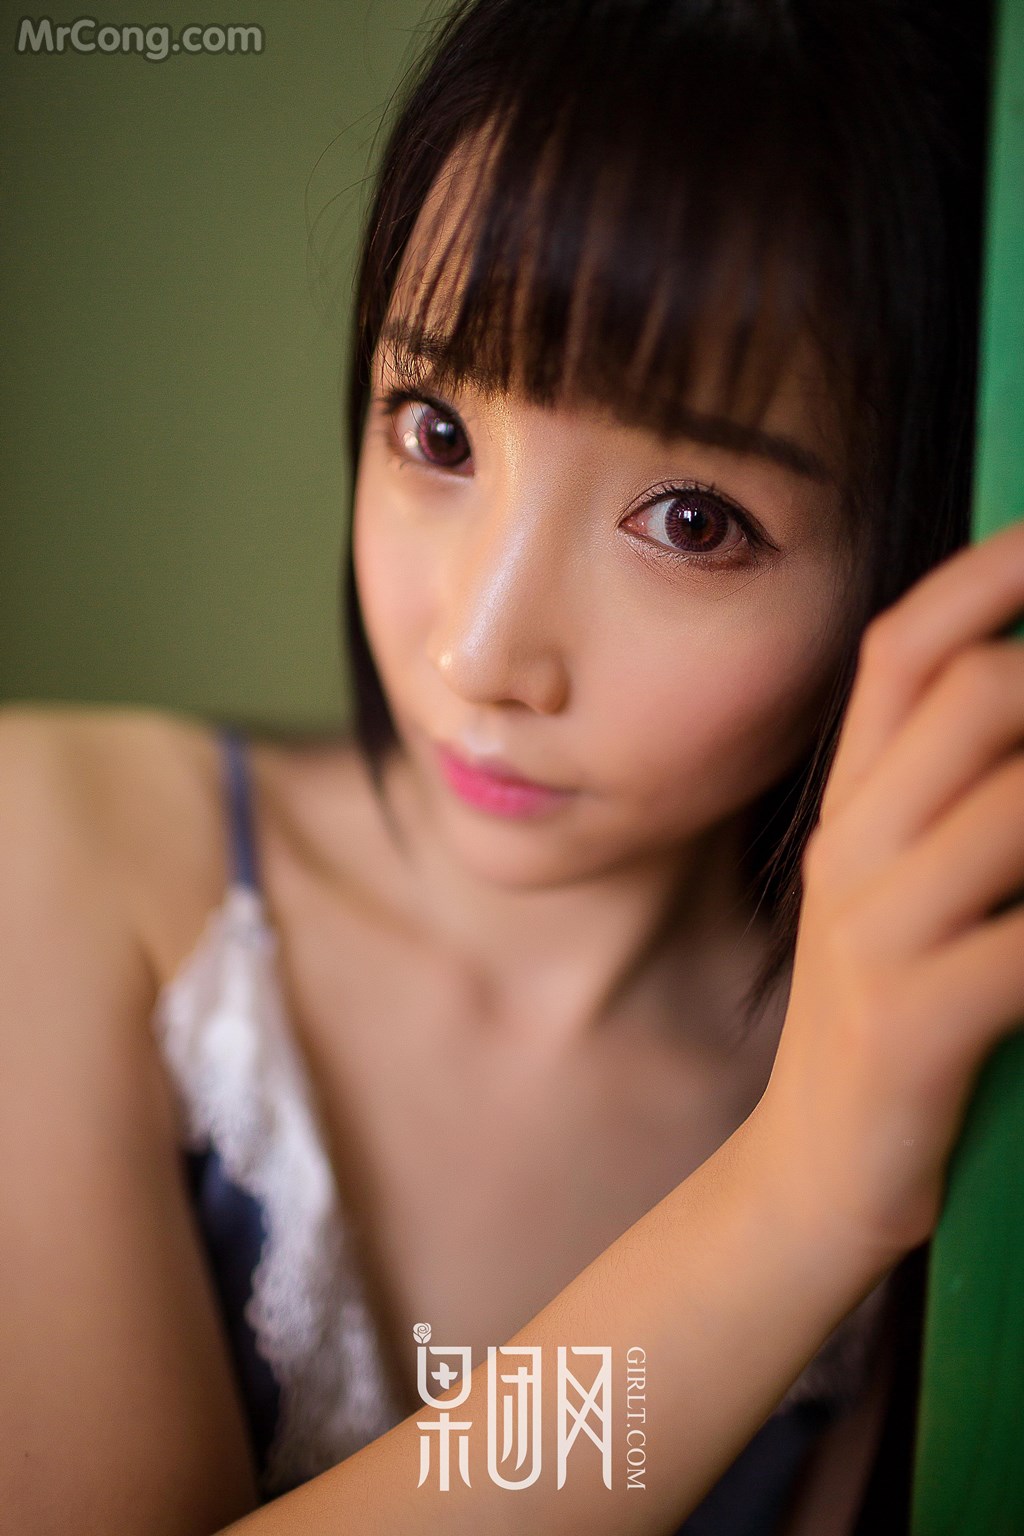 GIRLT No.010: Model Meng Shen Mei Mei (萌 神 妹妹) (56 photos) photo 1-6